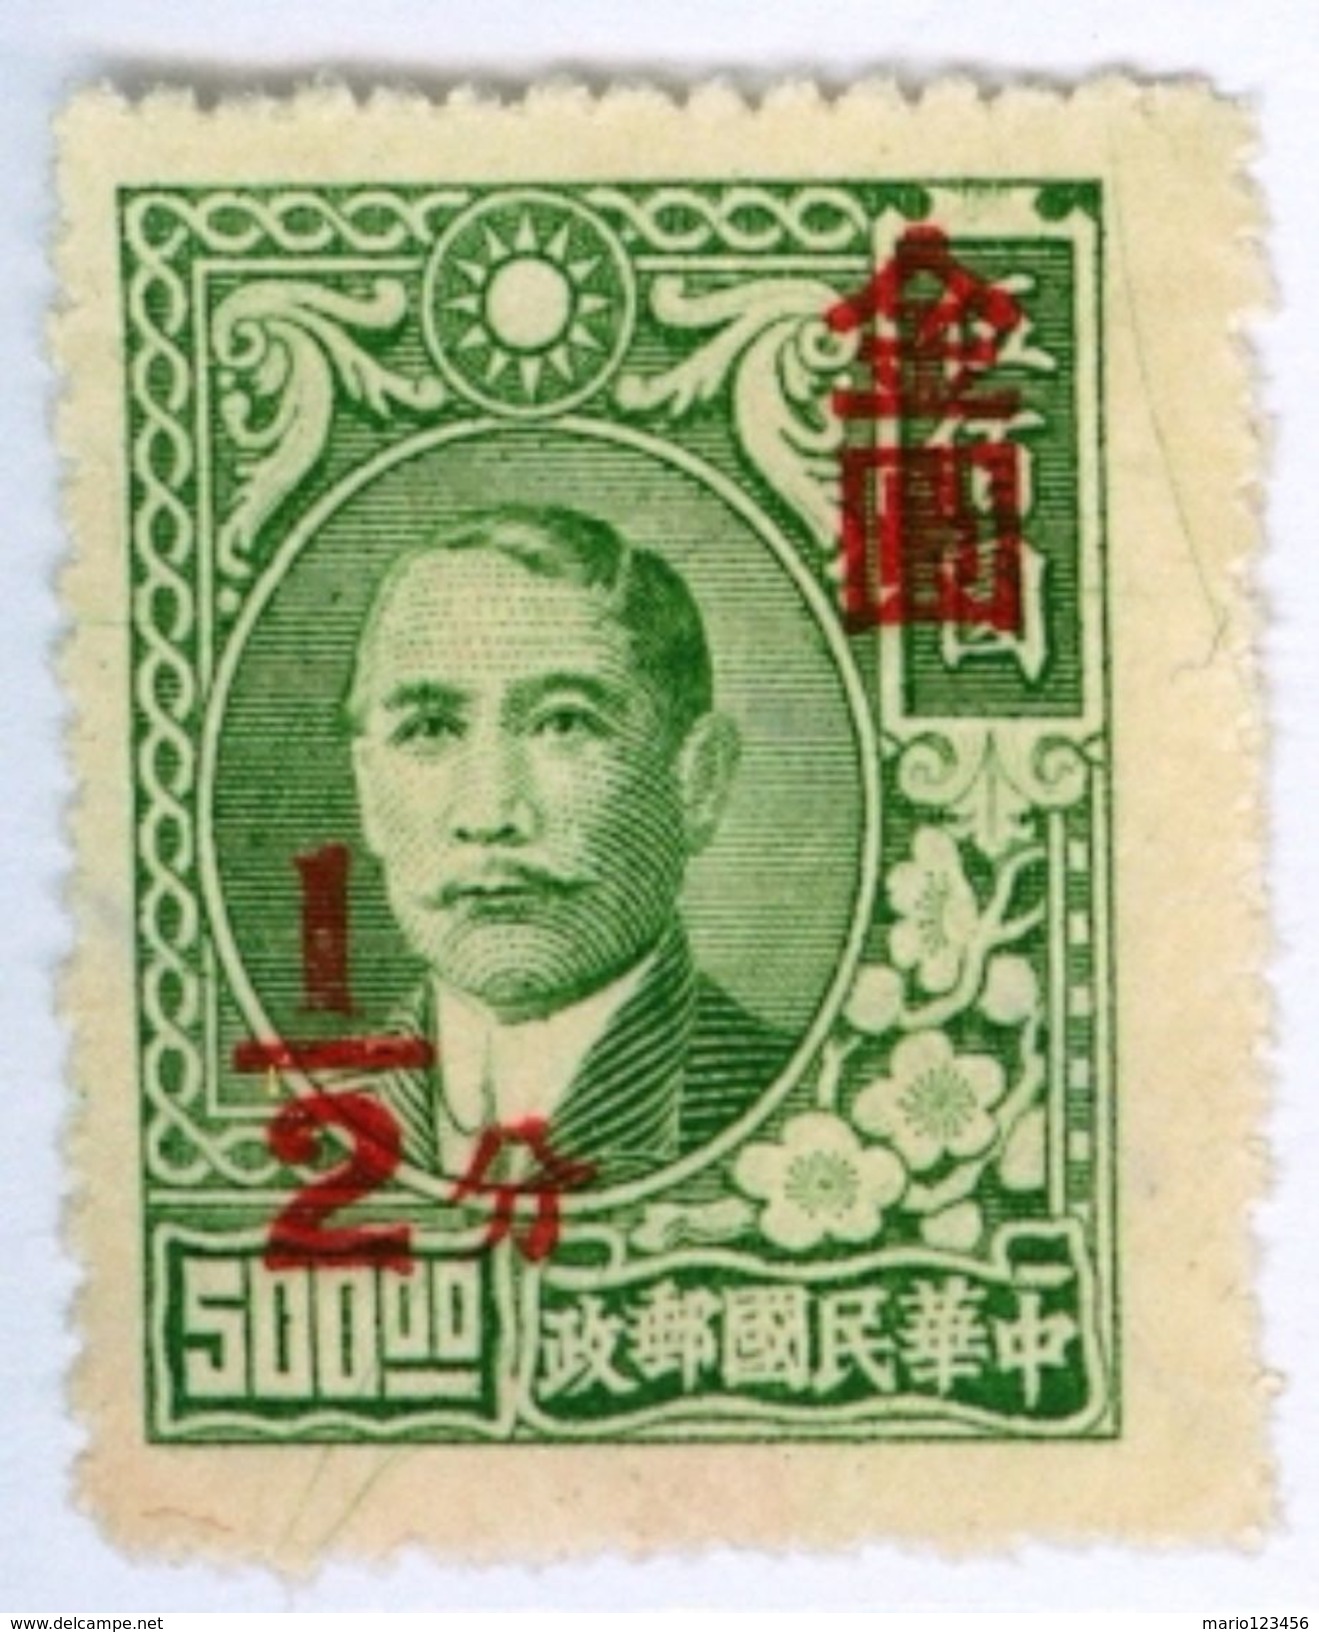 CINA, CHINA, COMMEMORATIVO, SUN YAT-SEN, 1948, FRANCOBOLLI NUOVI (MNG) Scott 822 - 1912-1949 Republic